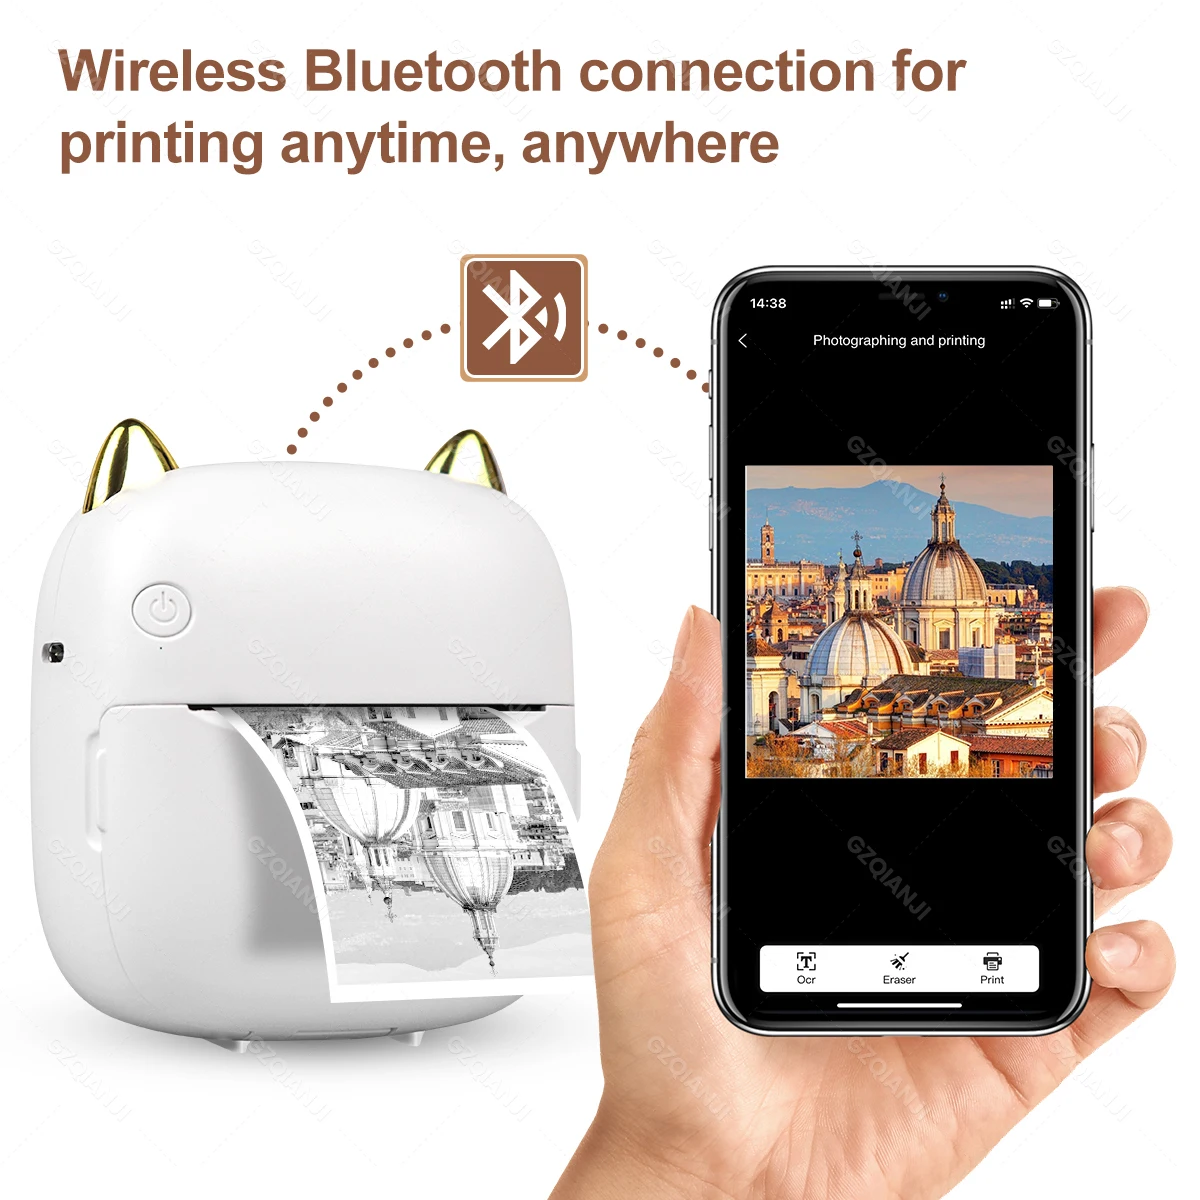 Impresora portátil, mini impresora térmica inalámbrica Bluetooth de  bolsillo con 6 rollos de papel de impresión para teléfono inteligente  Android iOS